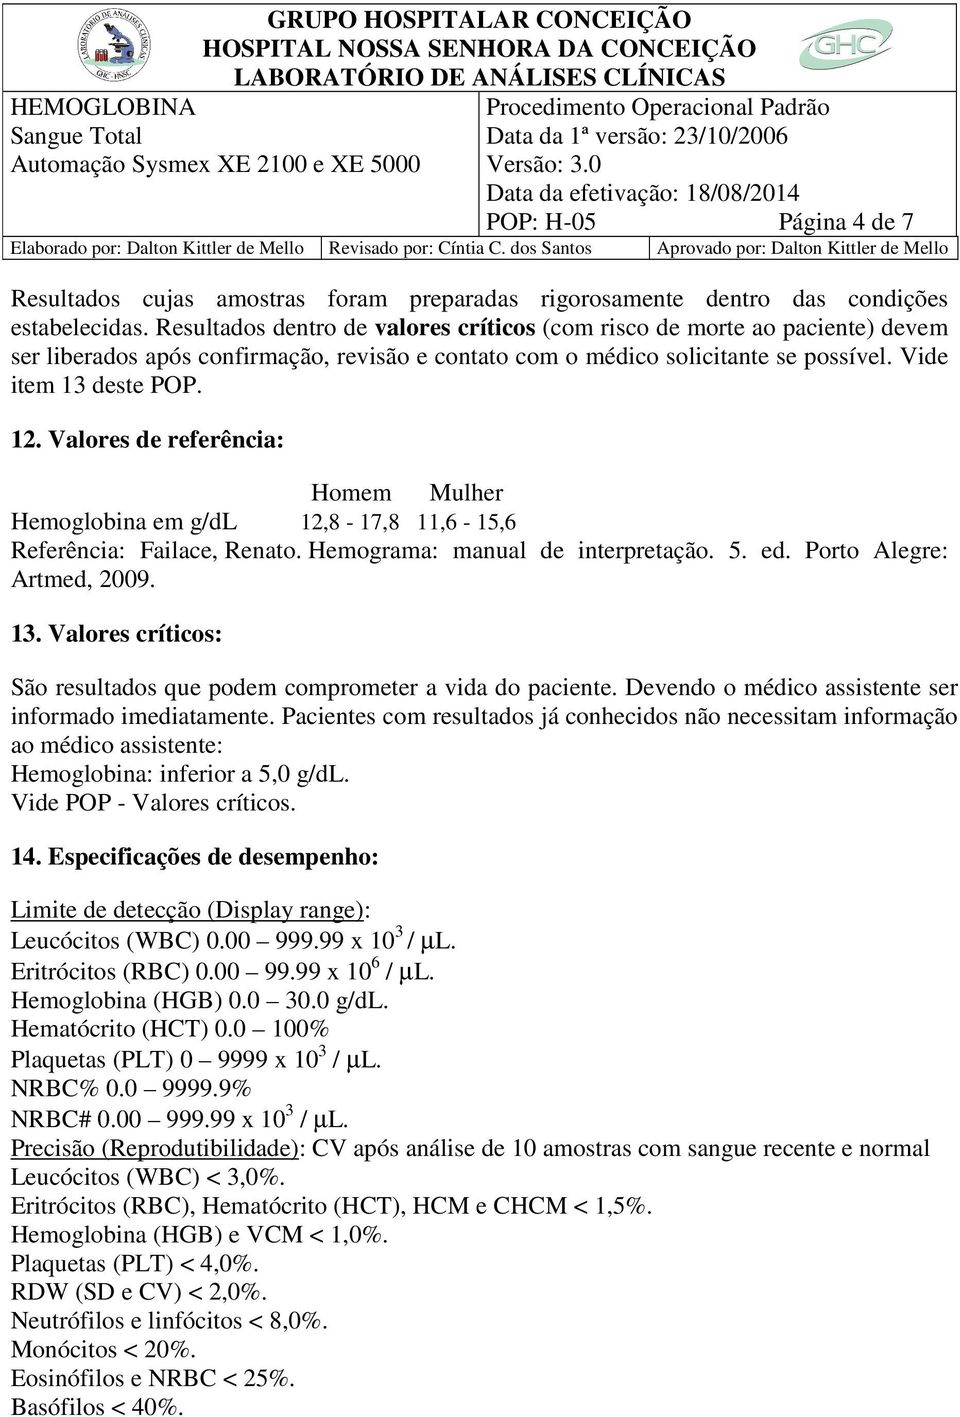 Valores de referência: Homem Mulher Hemoglobina em g/dl 12,8-17,8 11,6-15,6 Referência: Failace, Renato. Hemograma: manual de interpretação. 5. ed. Porto Alegre: Artmed, 2009. 13.